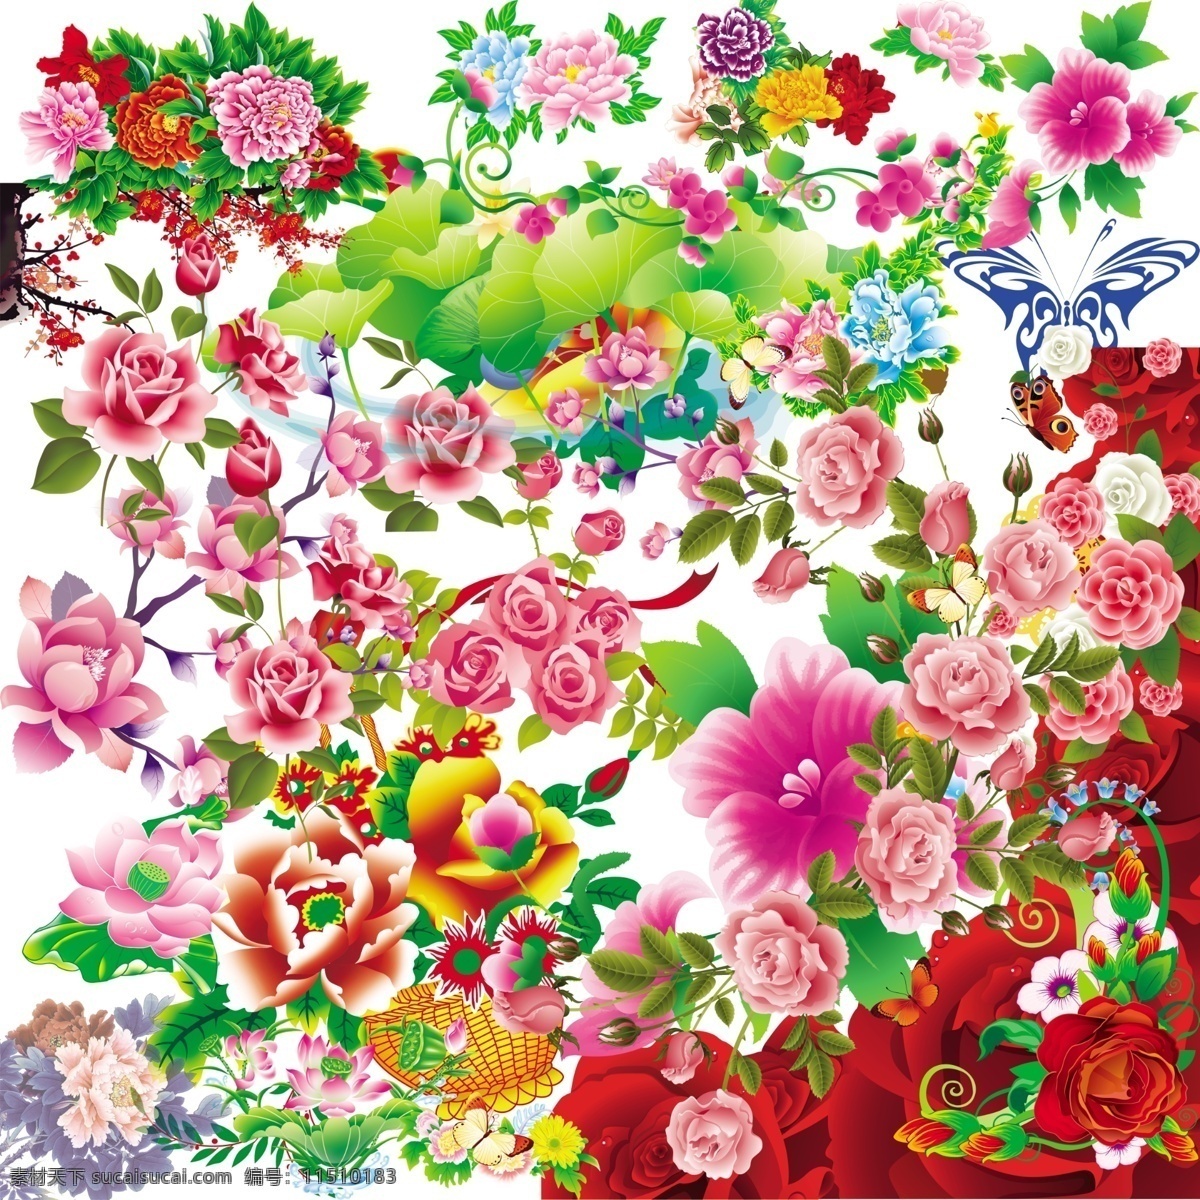 传统 花卉 背景 花朵 花卉背景 玫瑰花 牡丹花 植物 集合 psd源文件